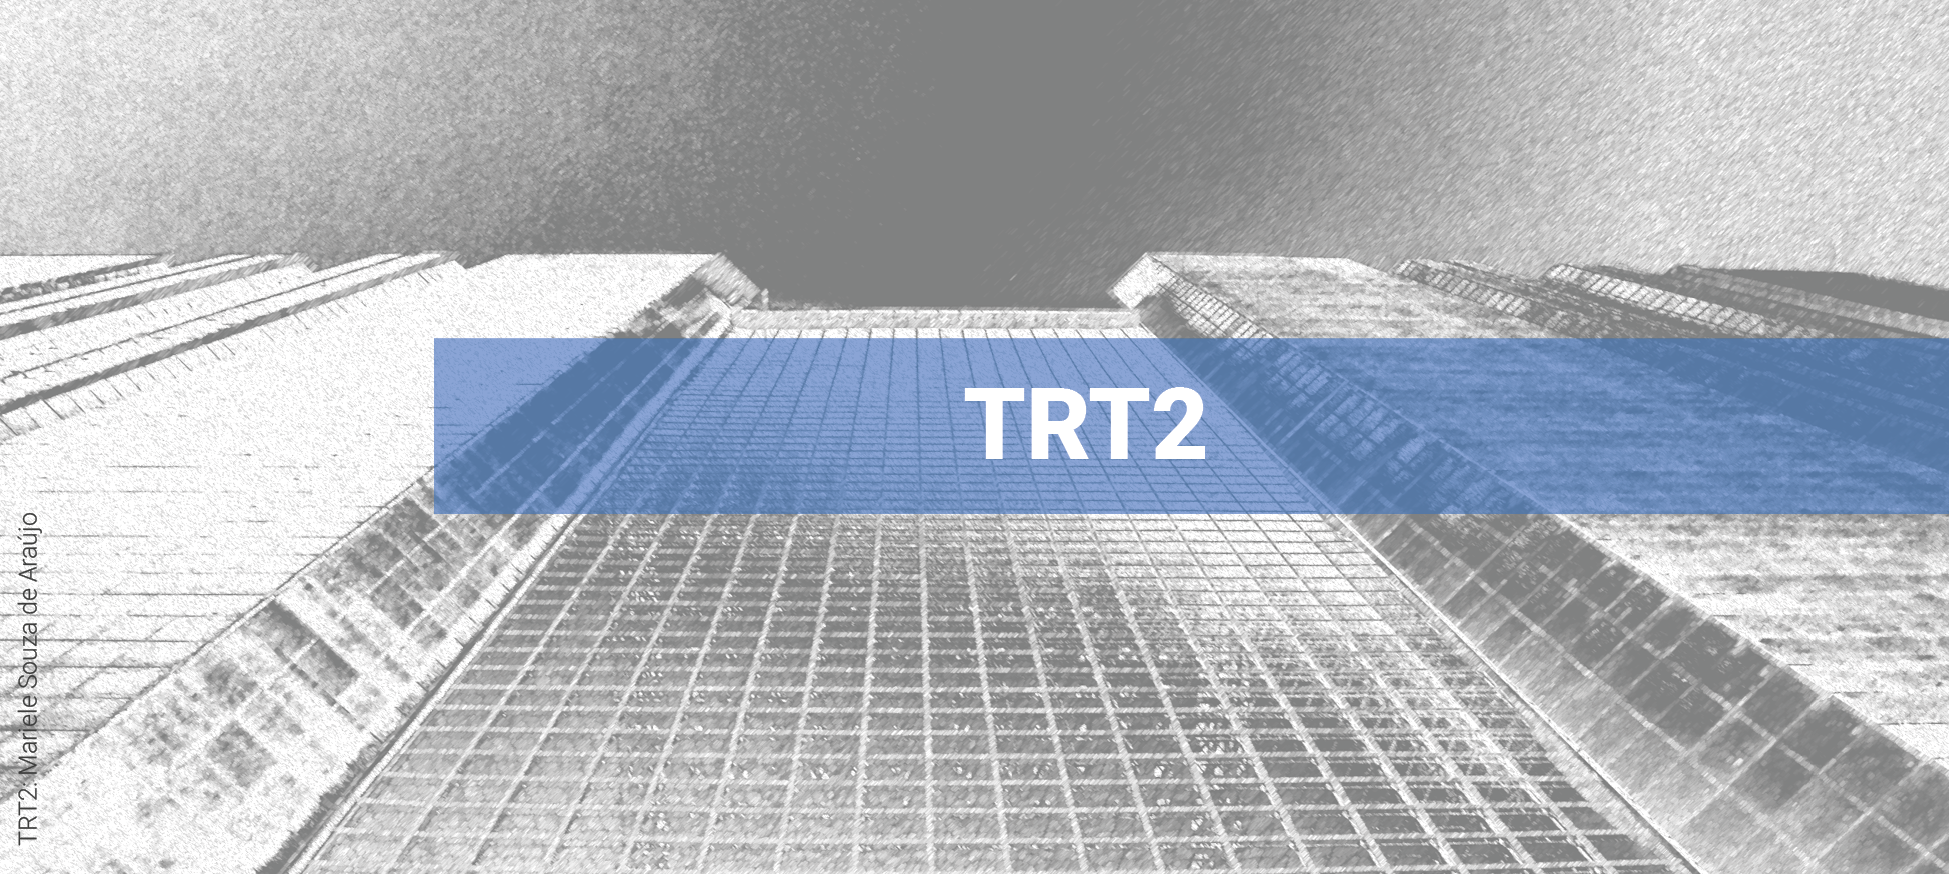 Ao fundo, detalhe da fachada do Fórum Rui Barbosa em preto e branco. Em primeiro plano, cortando parte da imagem horizontalmente, faixa azul onde se lê: TRT2.